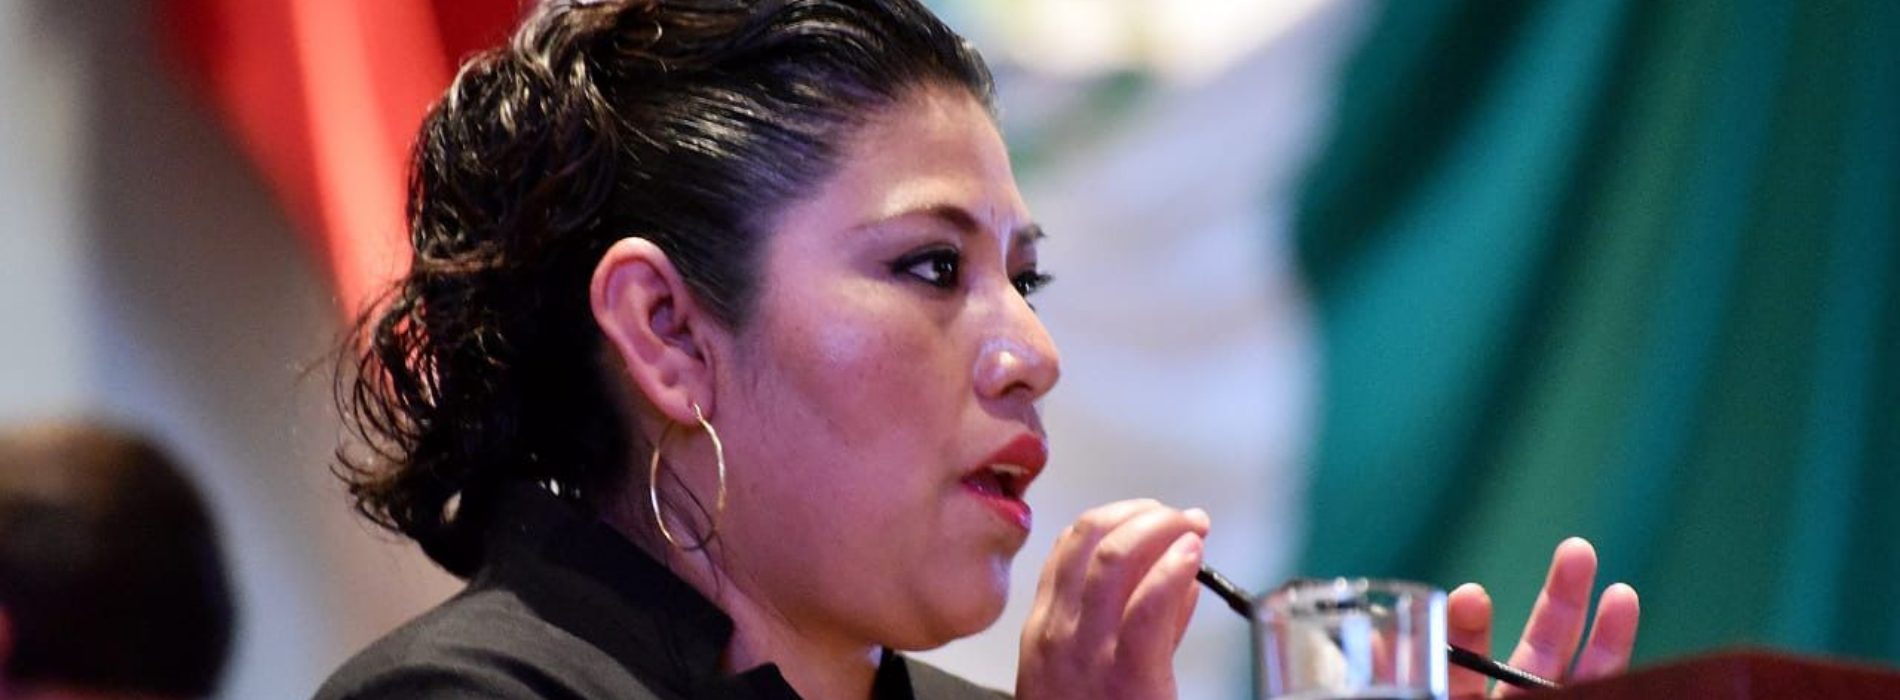 Que se investigue homicidio de oaxaqueño en California, pide Magaly López a Ebrard